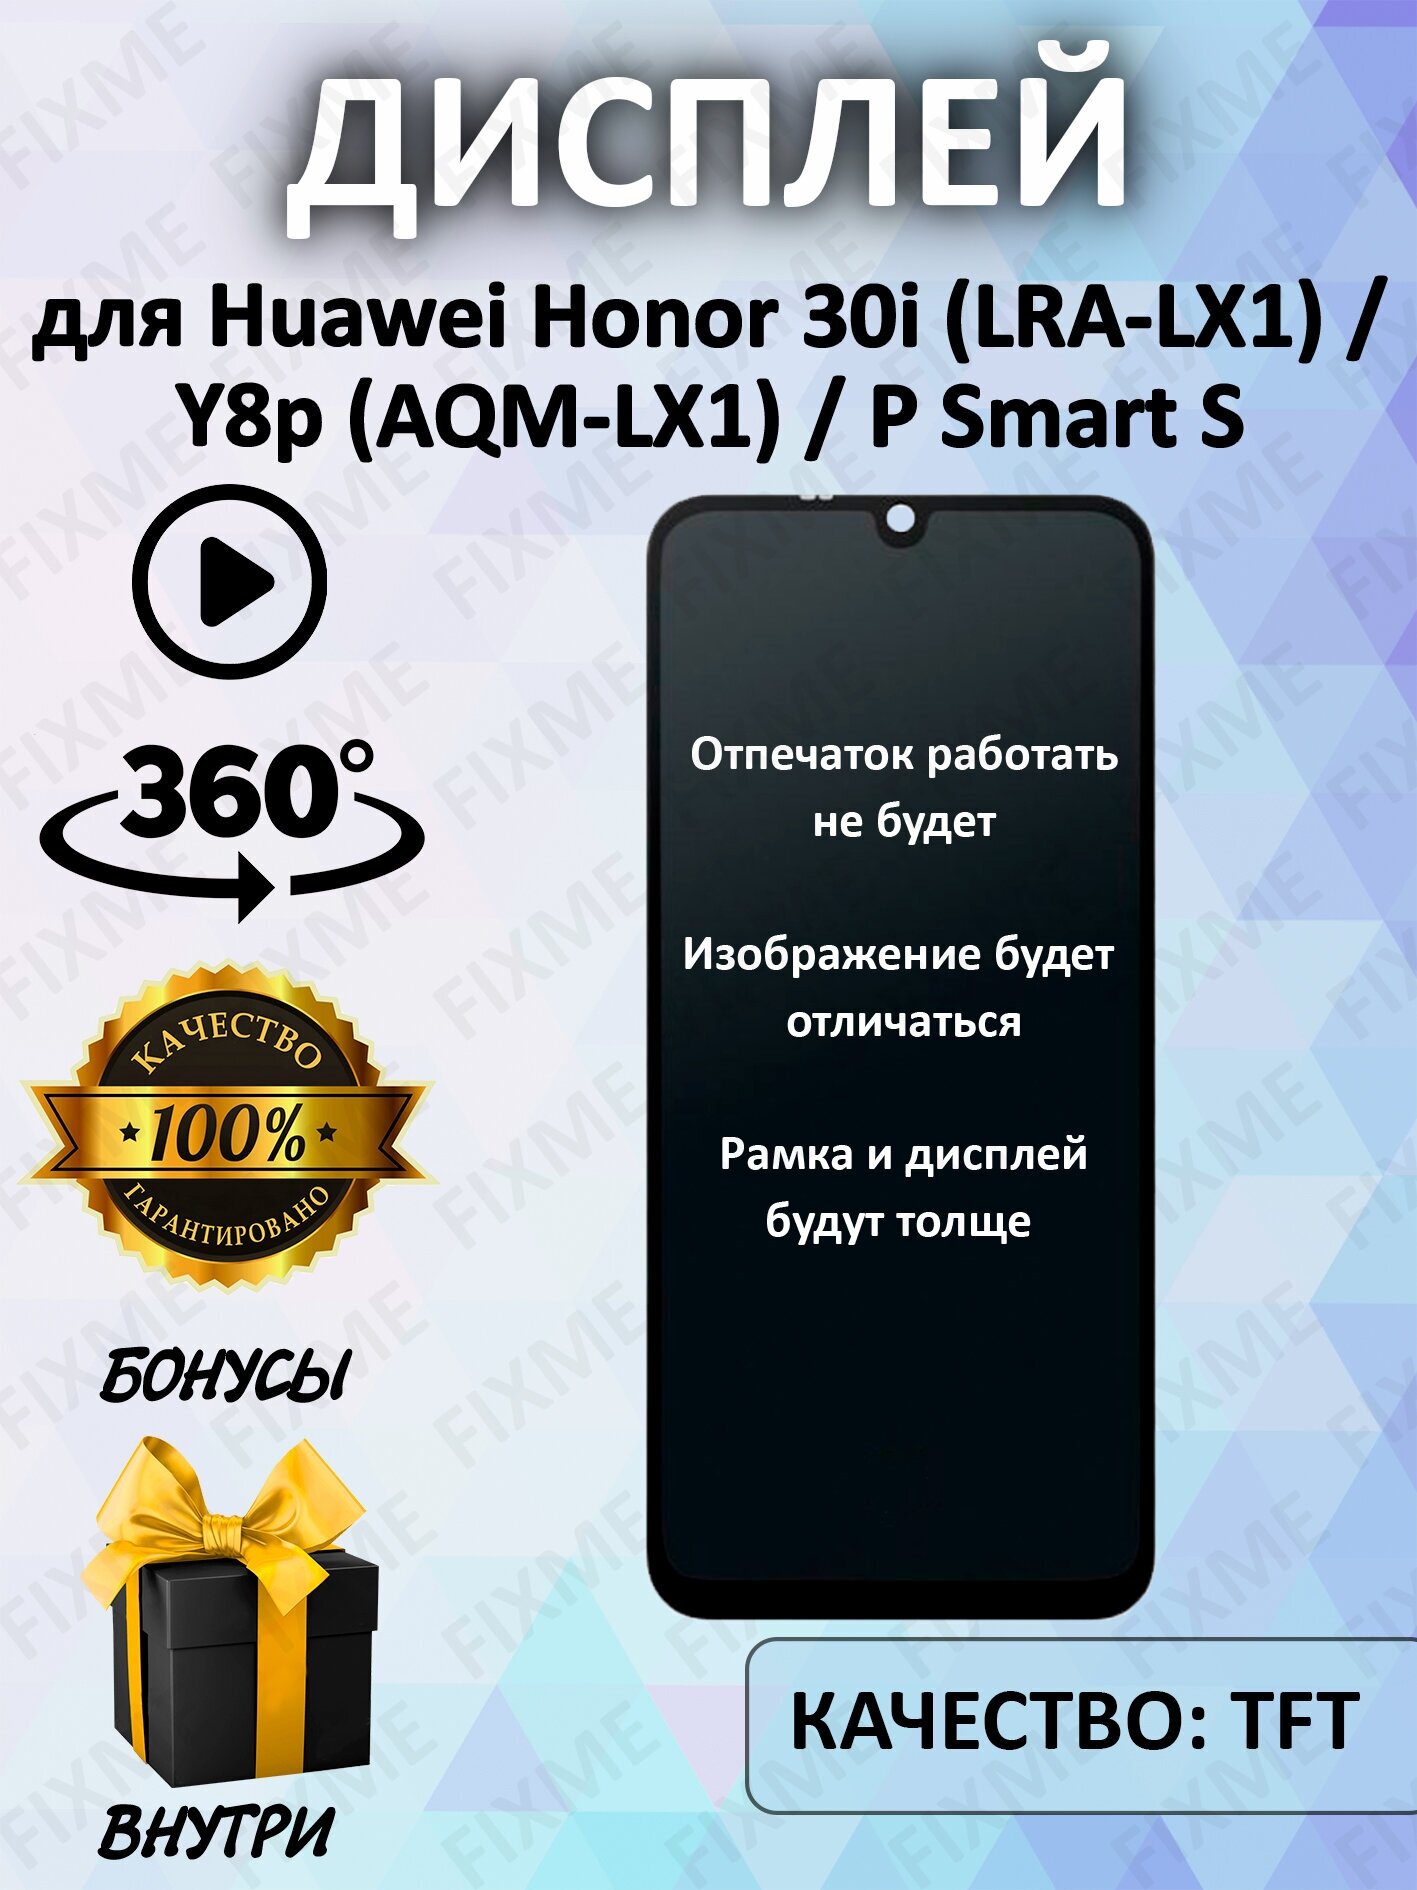 Дисплей для Huawei Honor 30i, Y8p, черный